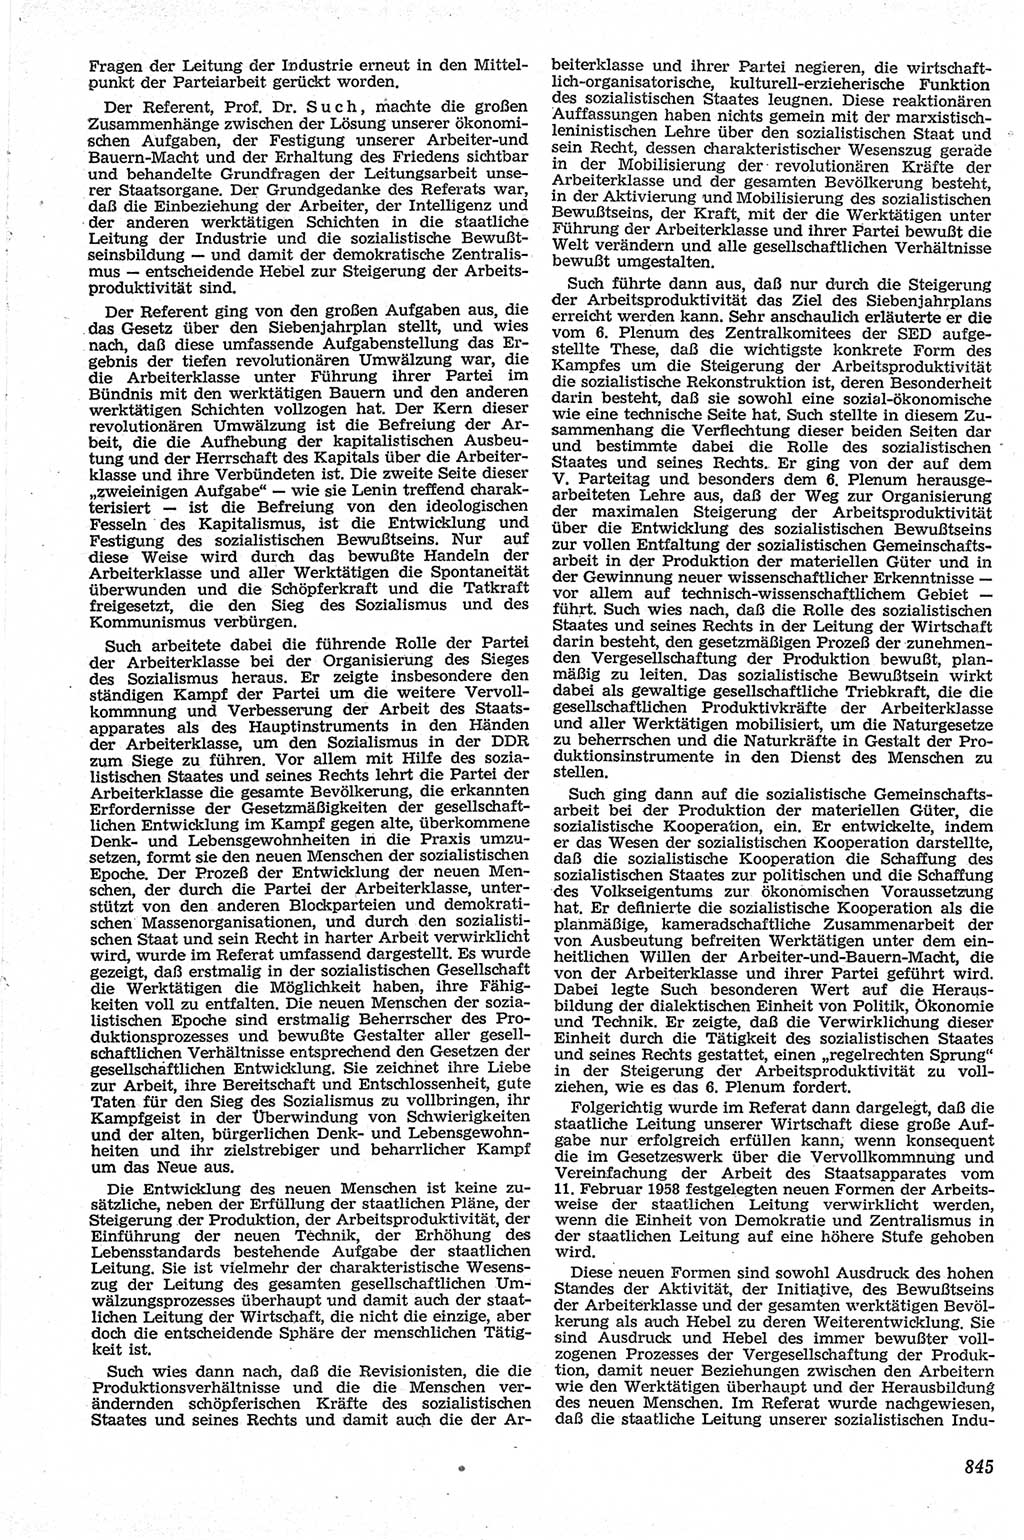 Neue Justiz (NJ), Zeitschrift für Recht und Rechtswissenschaft [Deutsche Demokratische Republik (DDR)], 13. Jahrgang 1959, Seite 845 (NJ DDR 1959, S. 845)